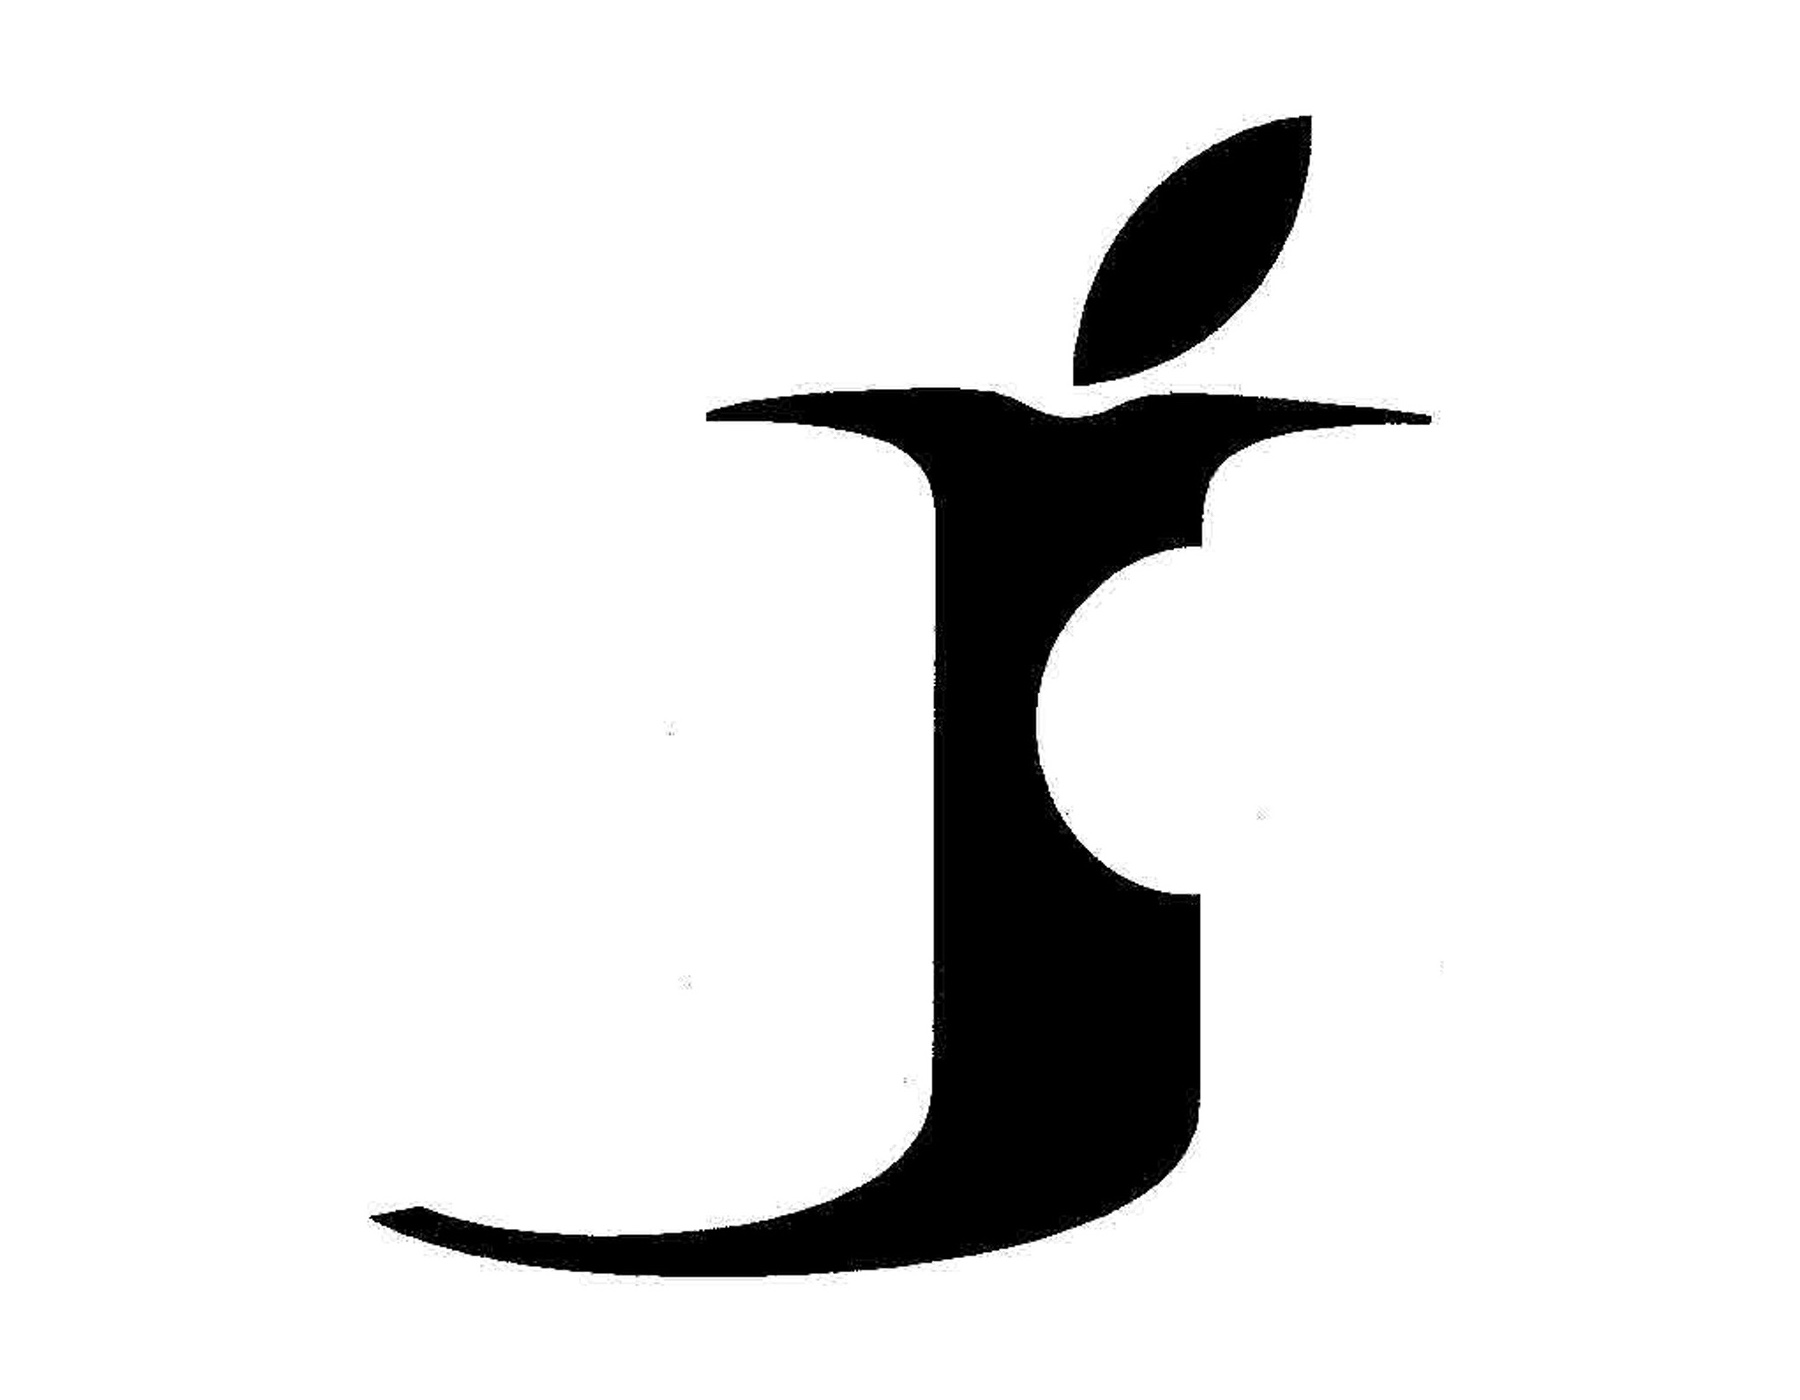 Bild: Steve Jobs-Marke (angebissener Buchstabe «j» mit einem Blatt als j-Punkt)